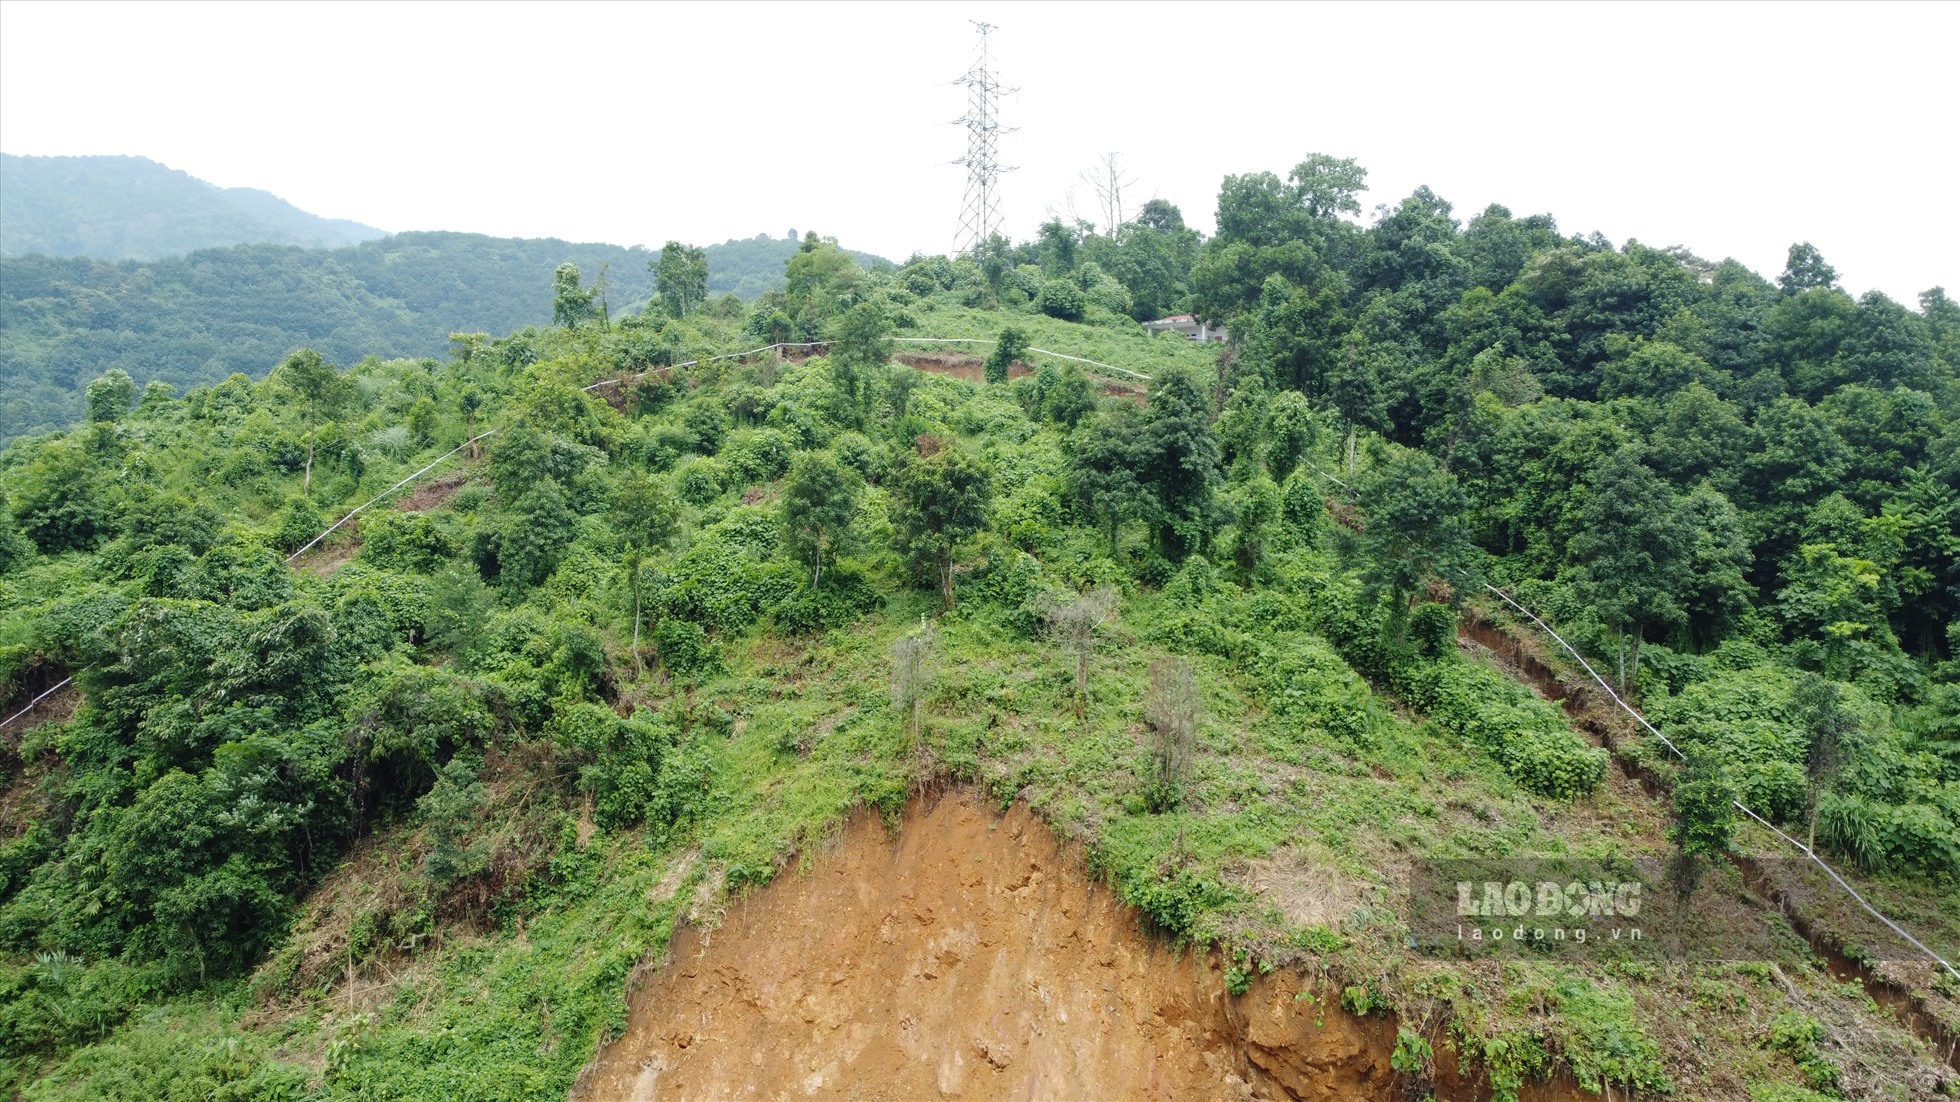 Vết nứt này xuất hiện từ trung tuần tháng 9, thuộc địa phận xã Bản Vược (Bát Xát, Lào Cai). Qua kiểm tra sơ bộ, tính từ mái taluy đường vào vết nứt chỗ cao nhất khoảng 70m; chiều dài vết nứt 100 mét; vết nứt rộng khoảng 30 cm; lún sâu so với hiện trạng khoảng 2m; diện tích khu vực nứt khoảng 4.000m2; ước khoảng 30.000 m3 đất, đá.